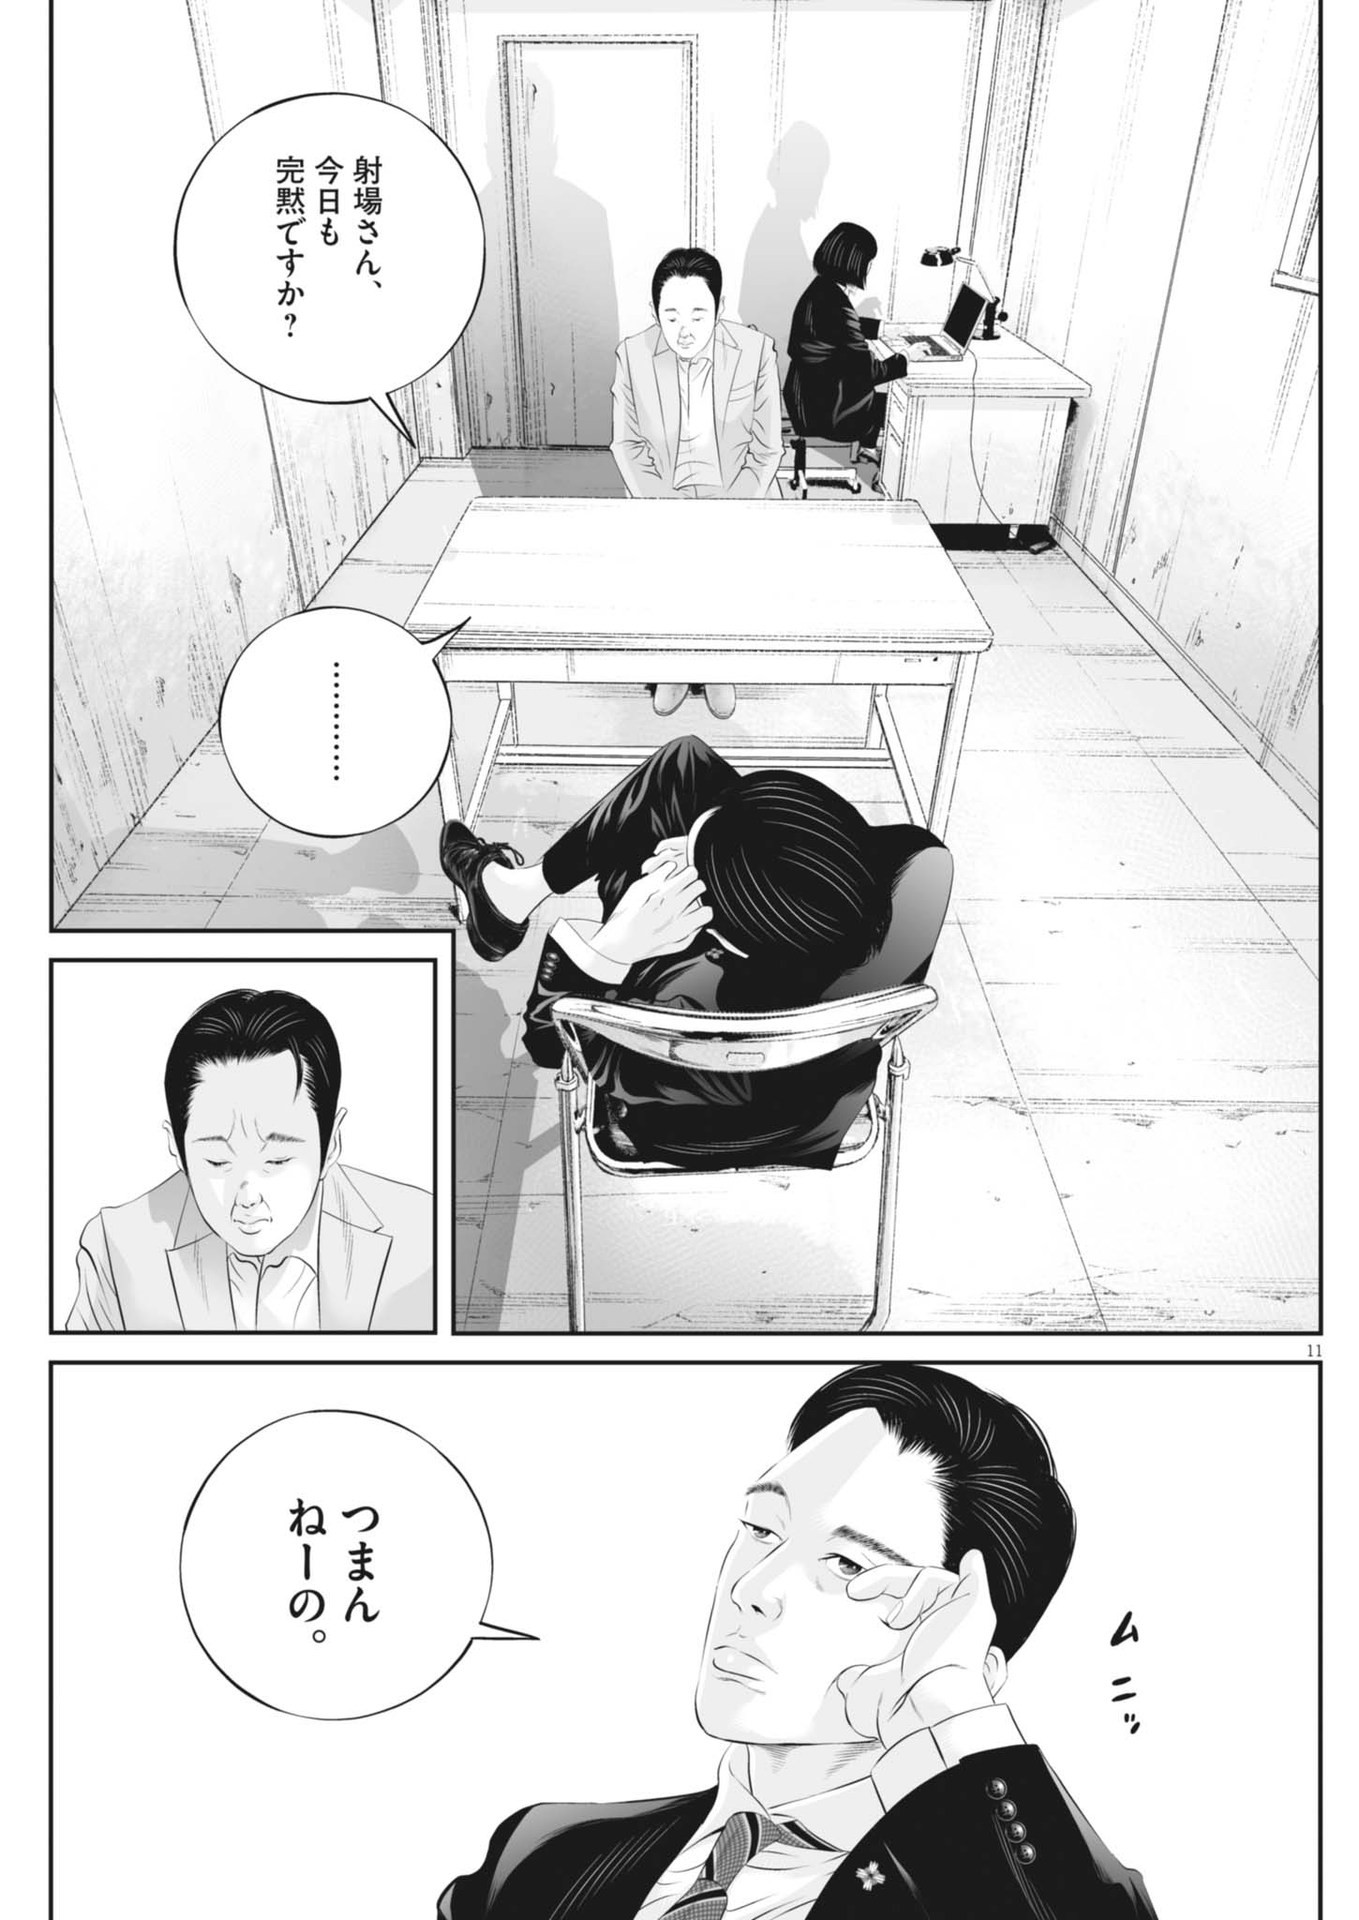 Kujou no Taizai - Chapter 104 - Page 11